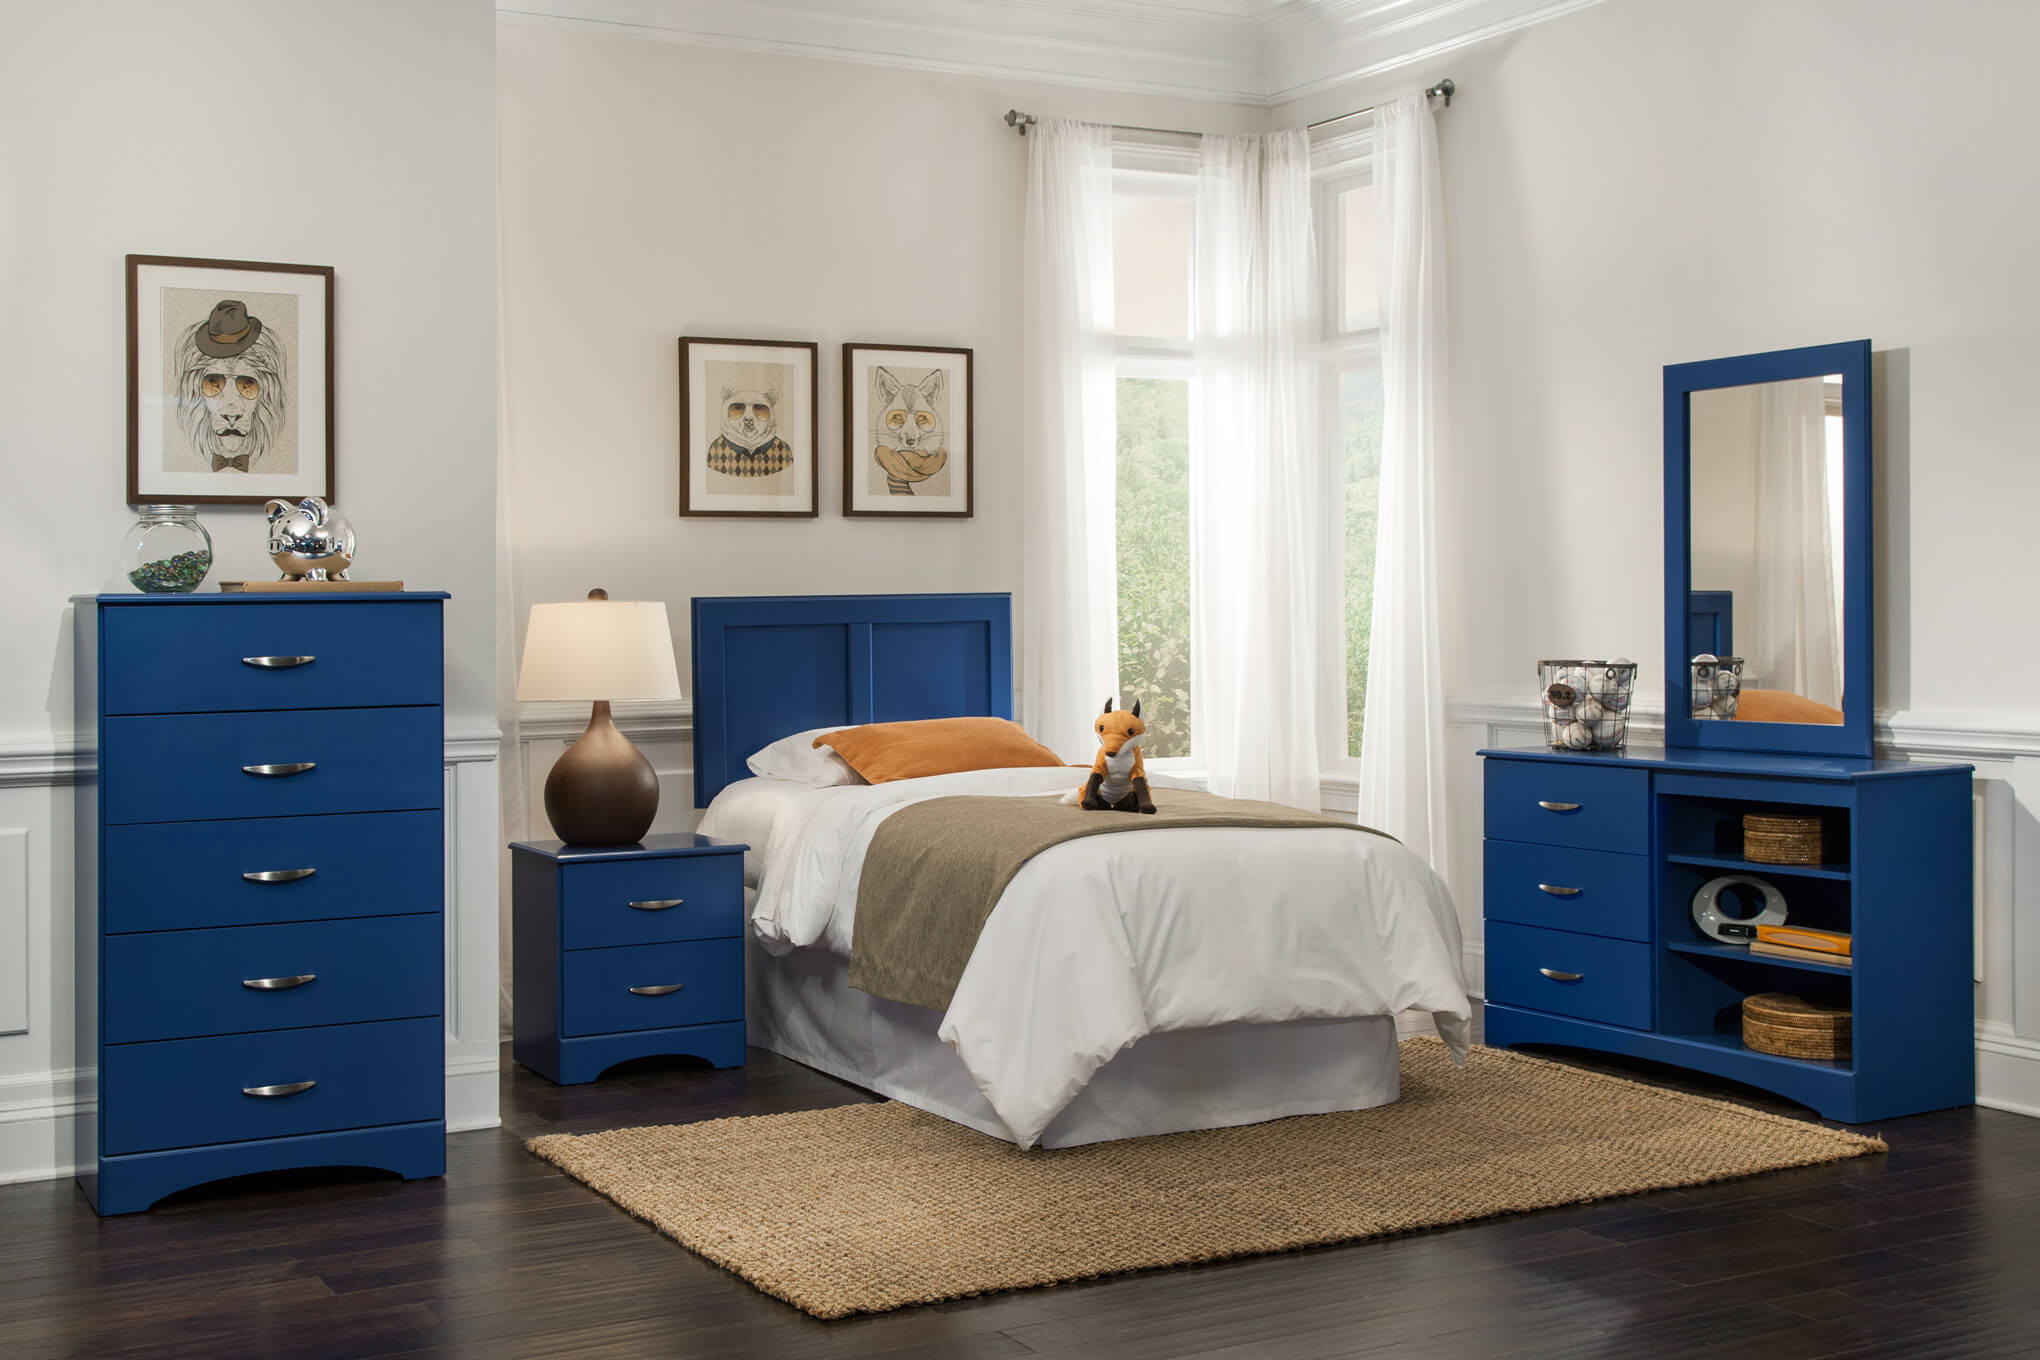 Kids Bedroom Furnitue
 Kith Royal Blue Bedroom Set